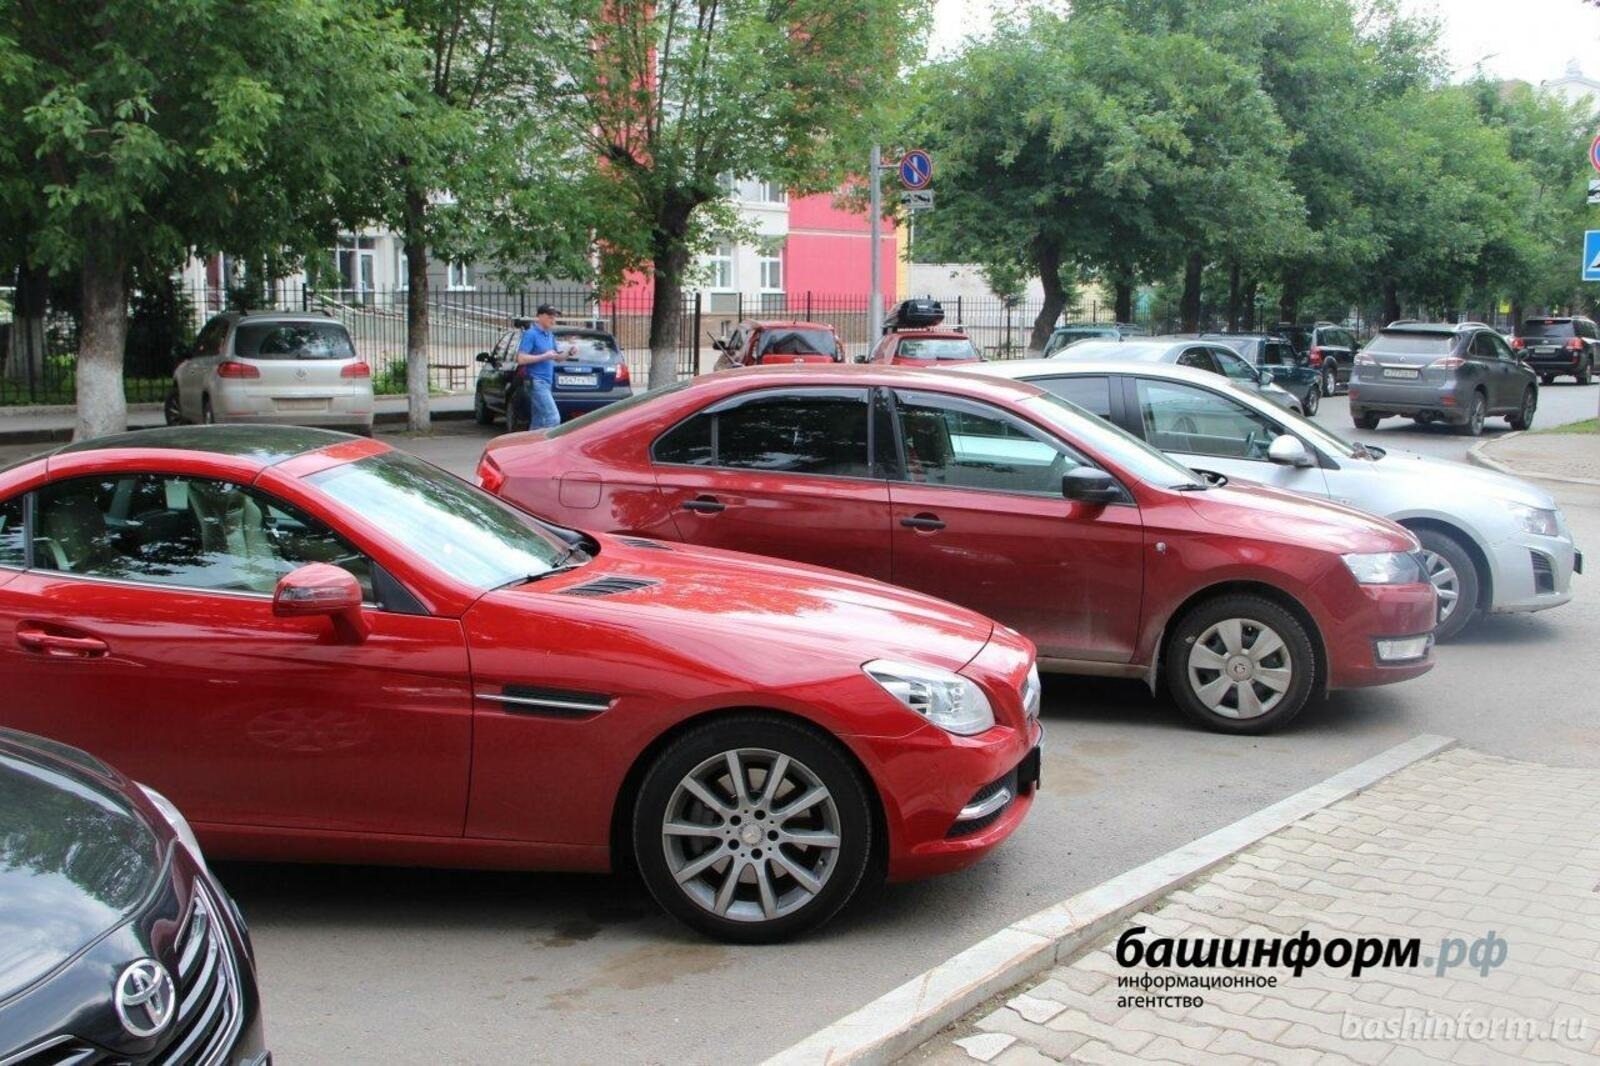 В течение года цены на автомобили в России будут постепенно снижаться